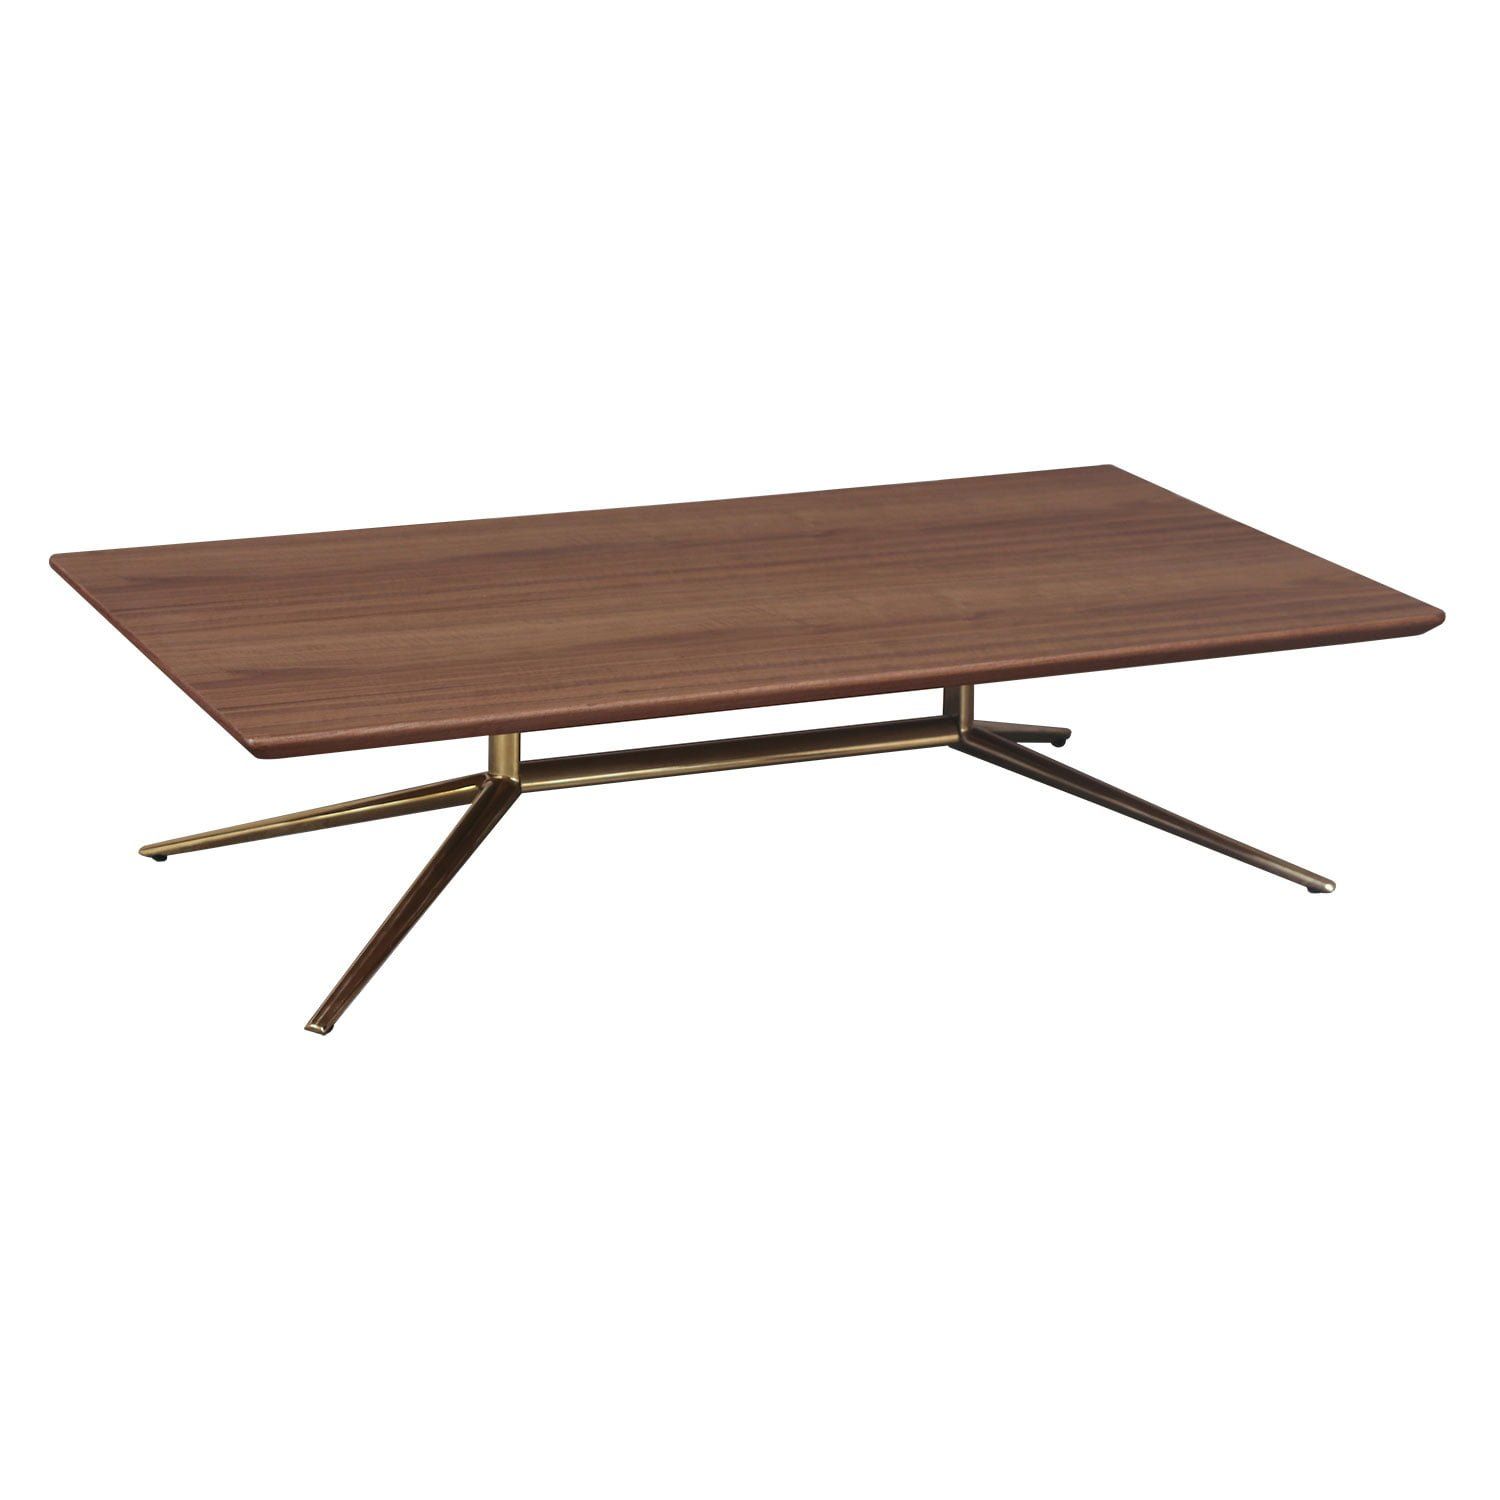 Wood Veneer Coffee Table, Natural Wood – National Office With Regard To Wood Veneer Coffee Tables (View 13 of 15)